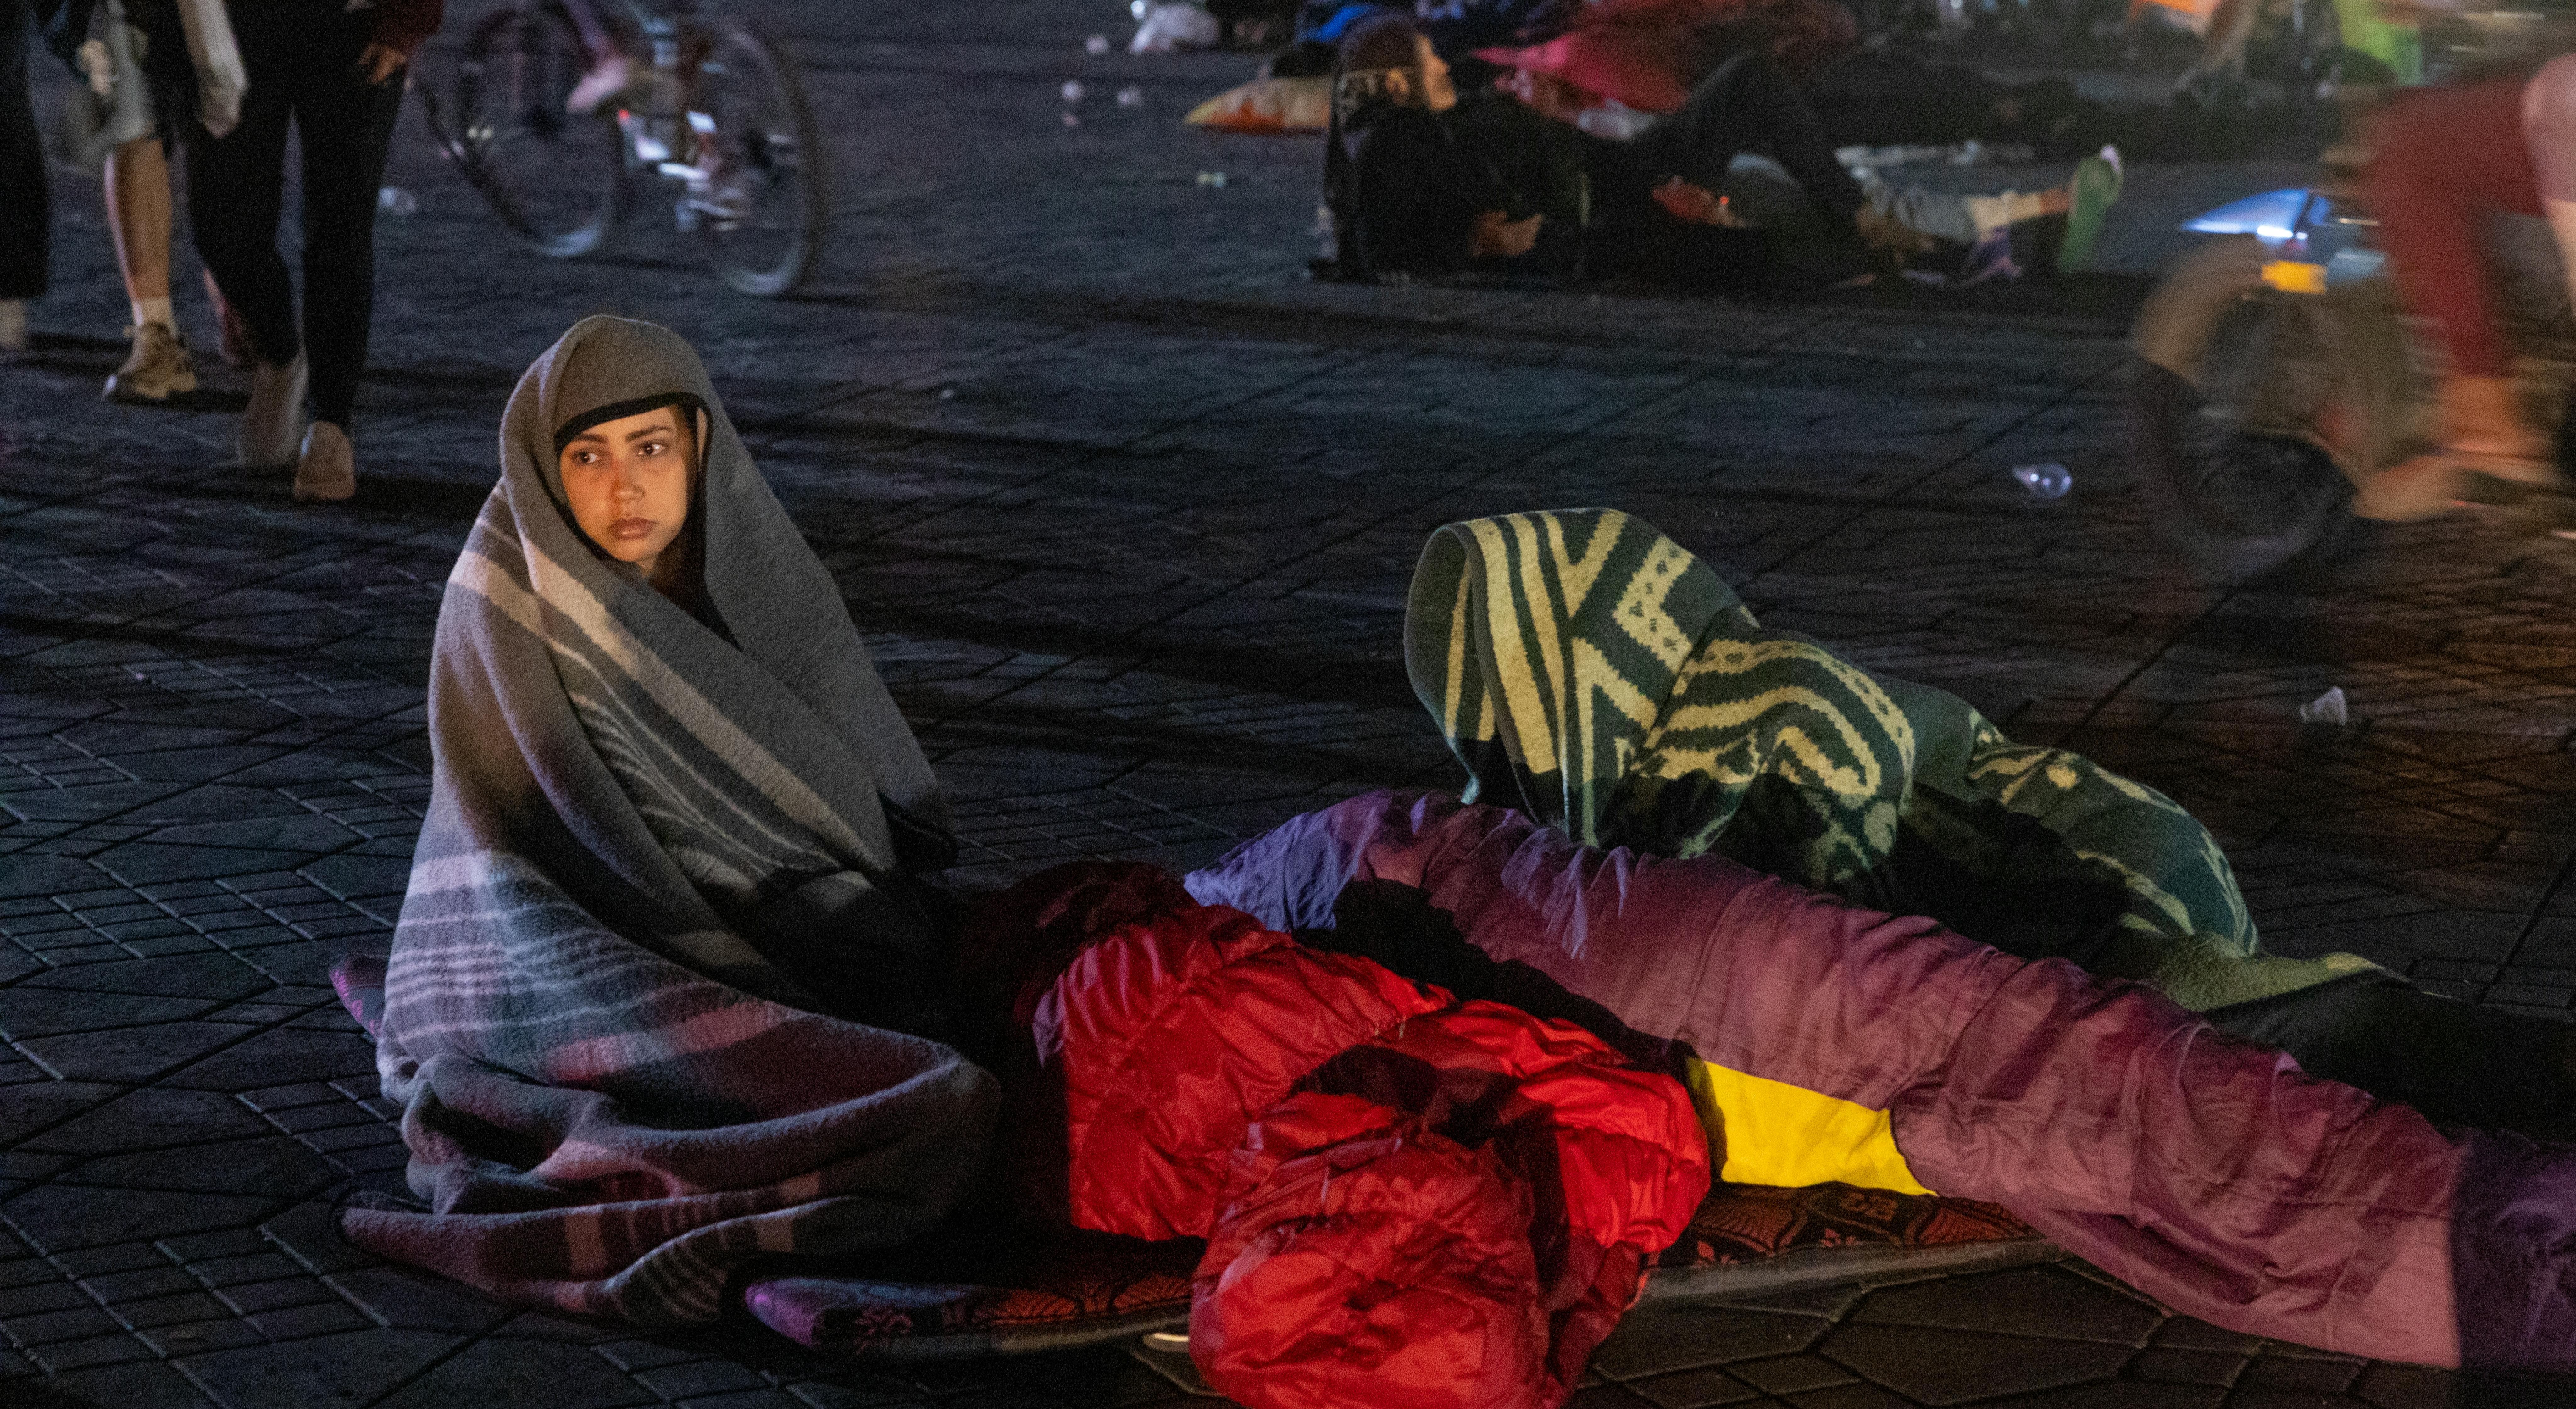 credit Senna/AFP, uso riservato ad UNICEF - Residenti accampati in piazza, a Marrakesh, in seguito della scossa di terremoto di magnitudo 6,8 del 9 settembre 2023. I residenti di Marrakesh hanno riferito urla 